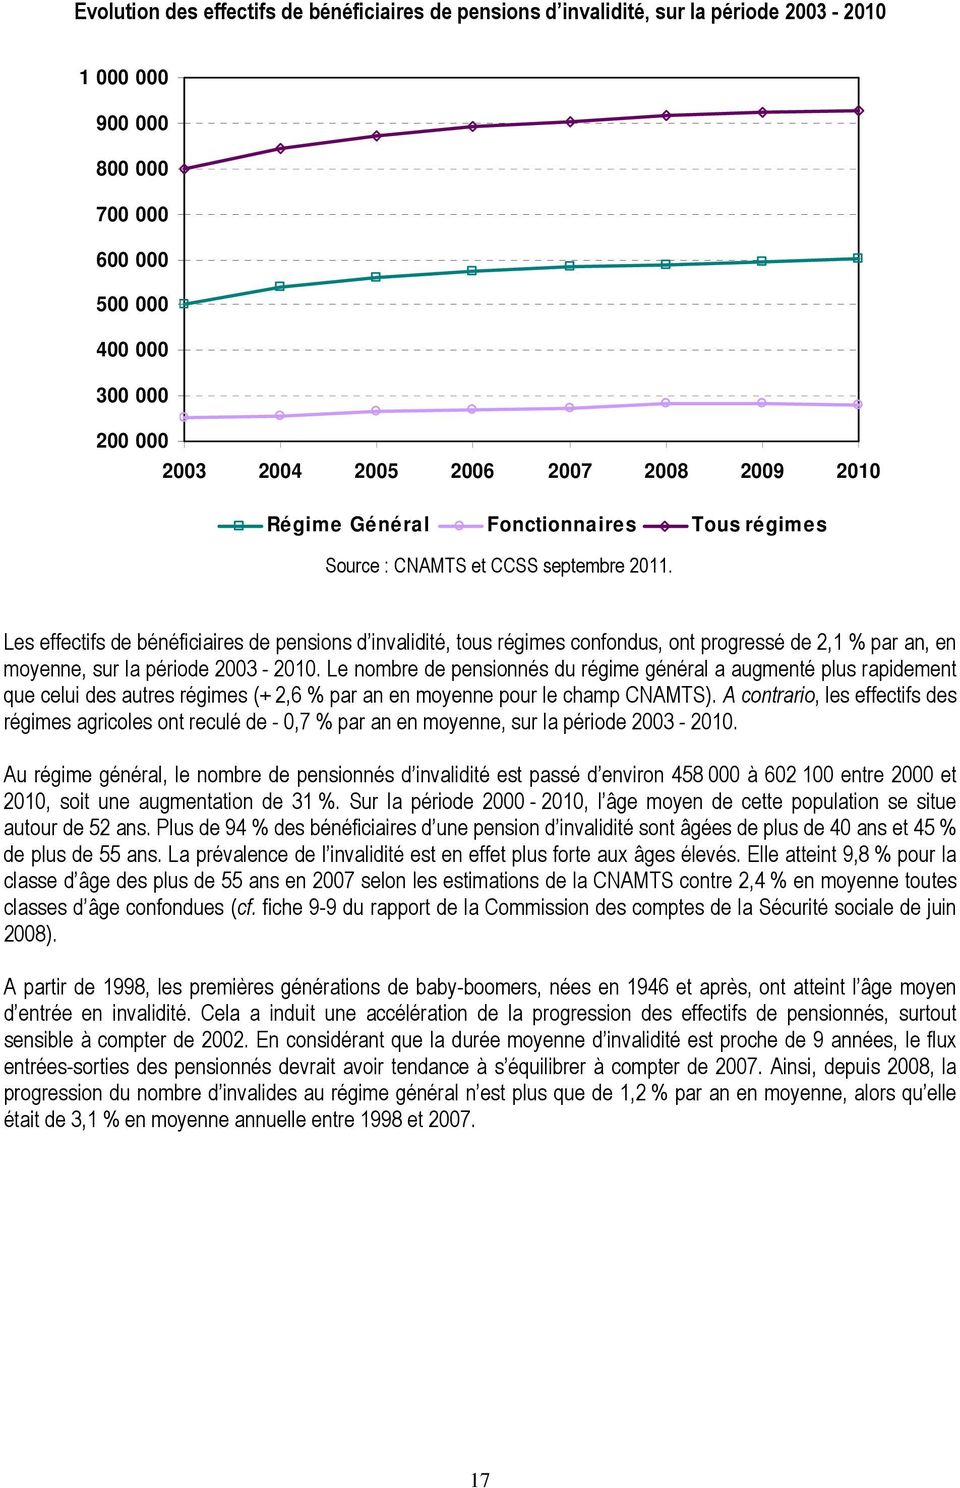 Les effectifs de bénéficiaires de pensions d invalidité, tous régimes confondus, ont progressé de 2,1 % par an, en moyenne, sur la période 2003-2010.